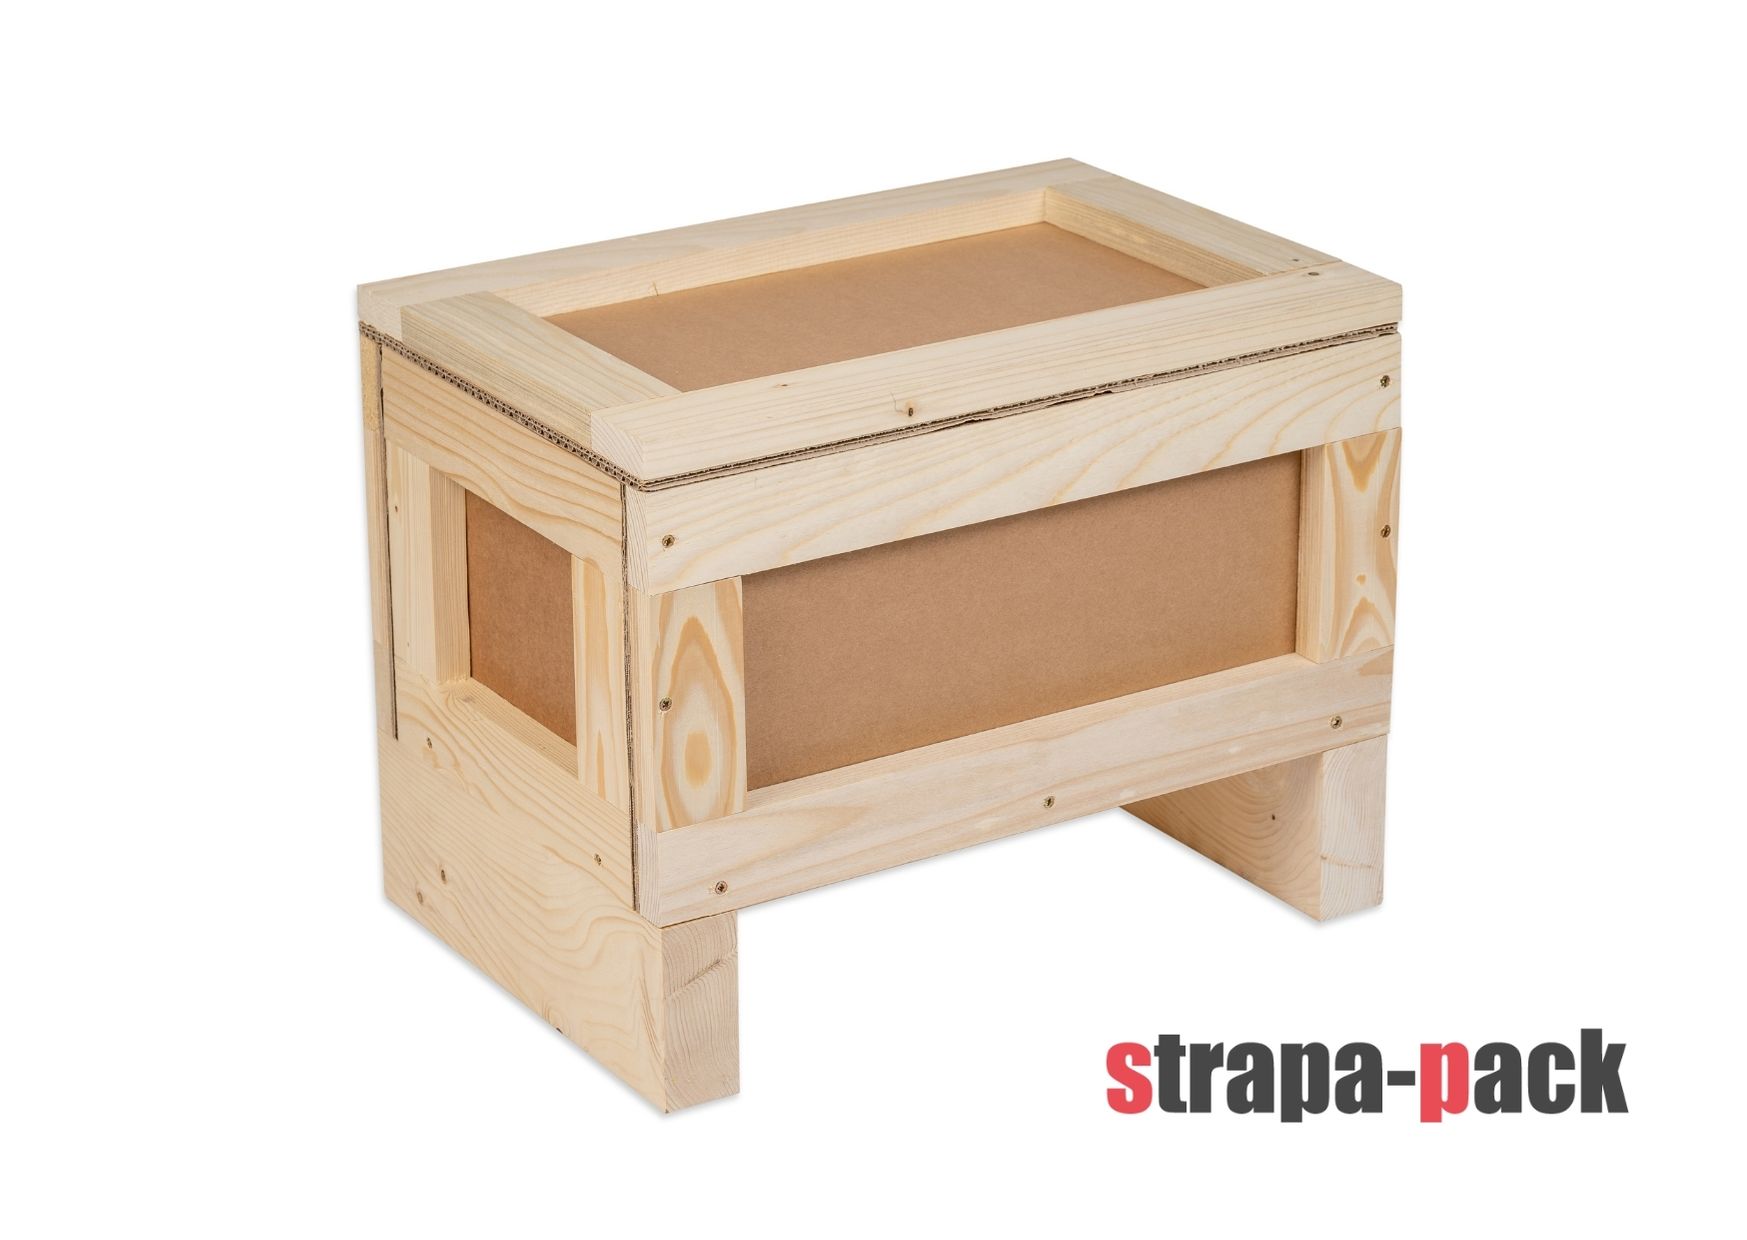 Strapa-pack Kiste